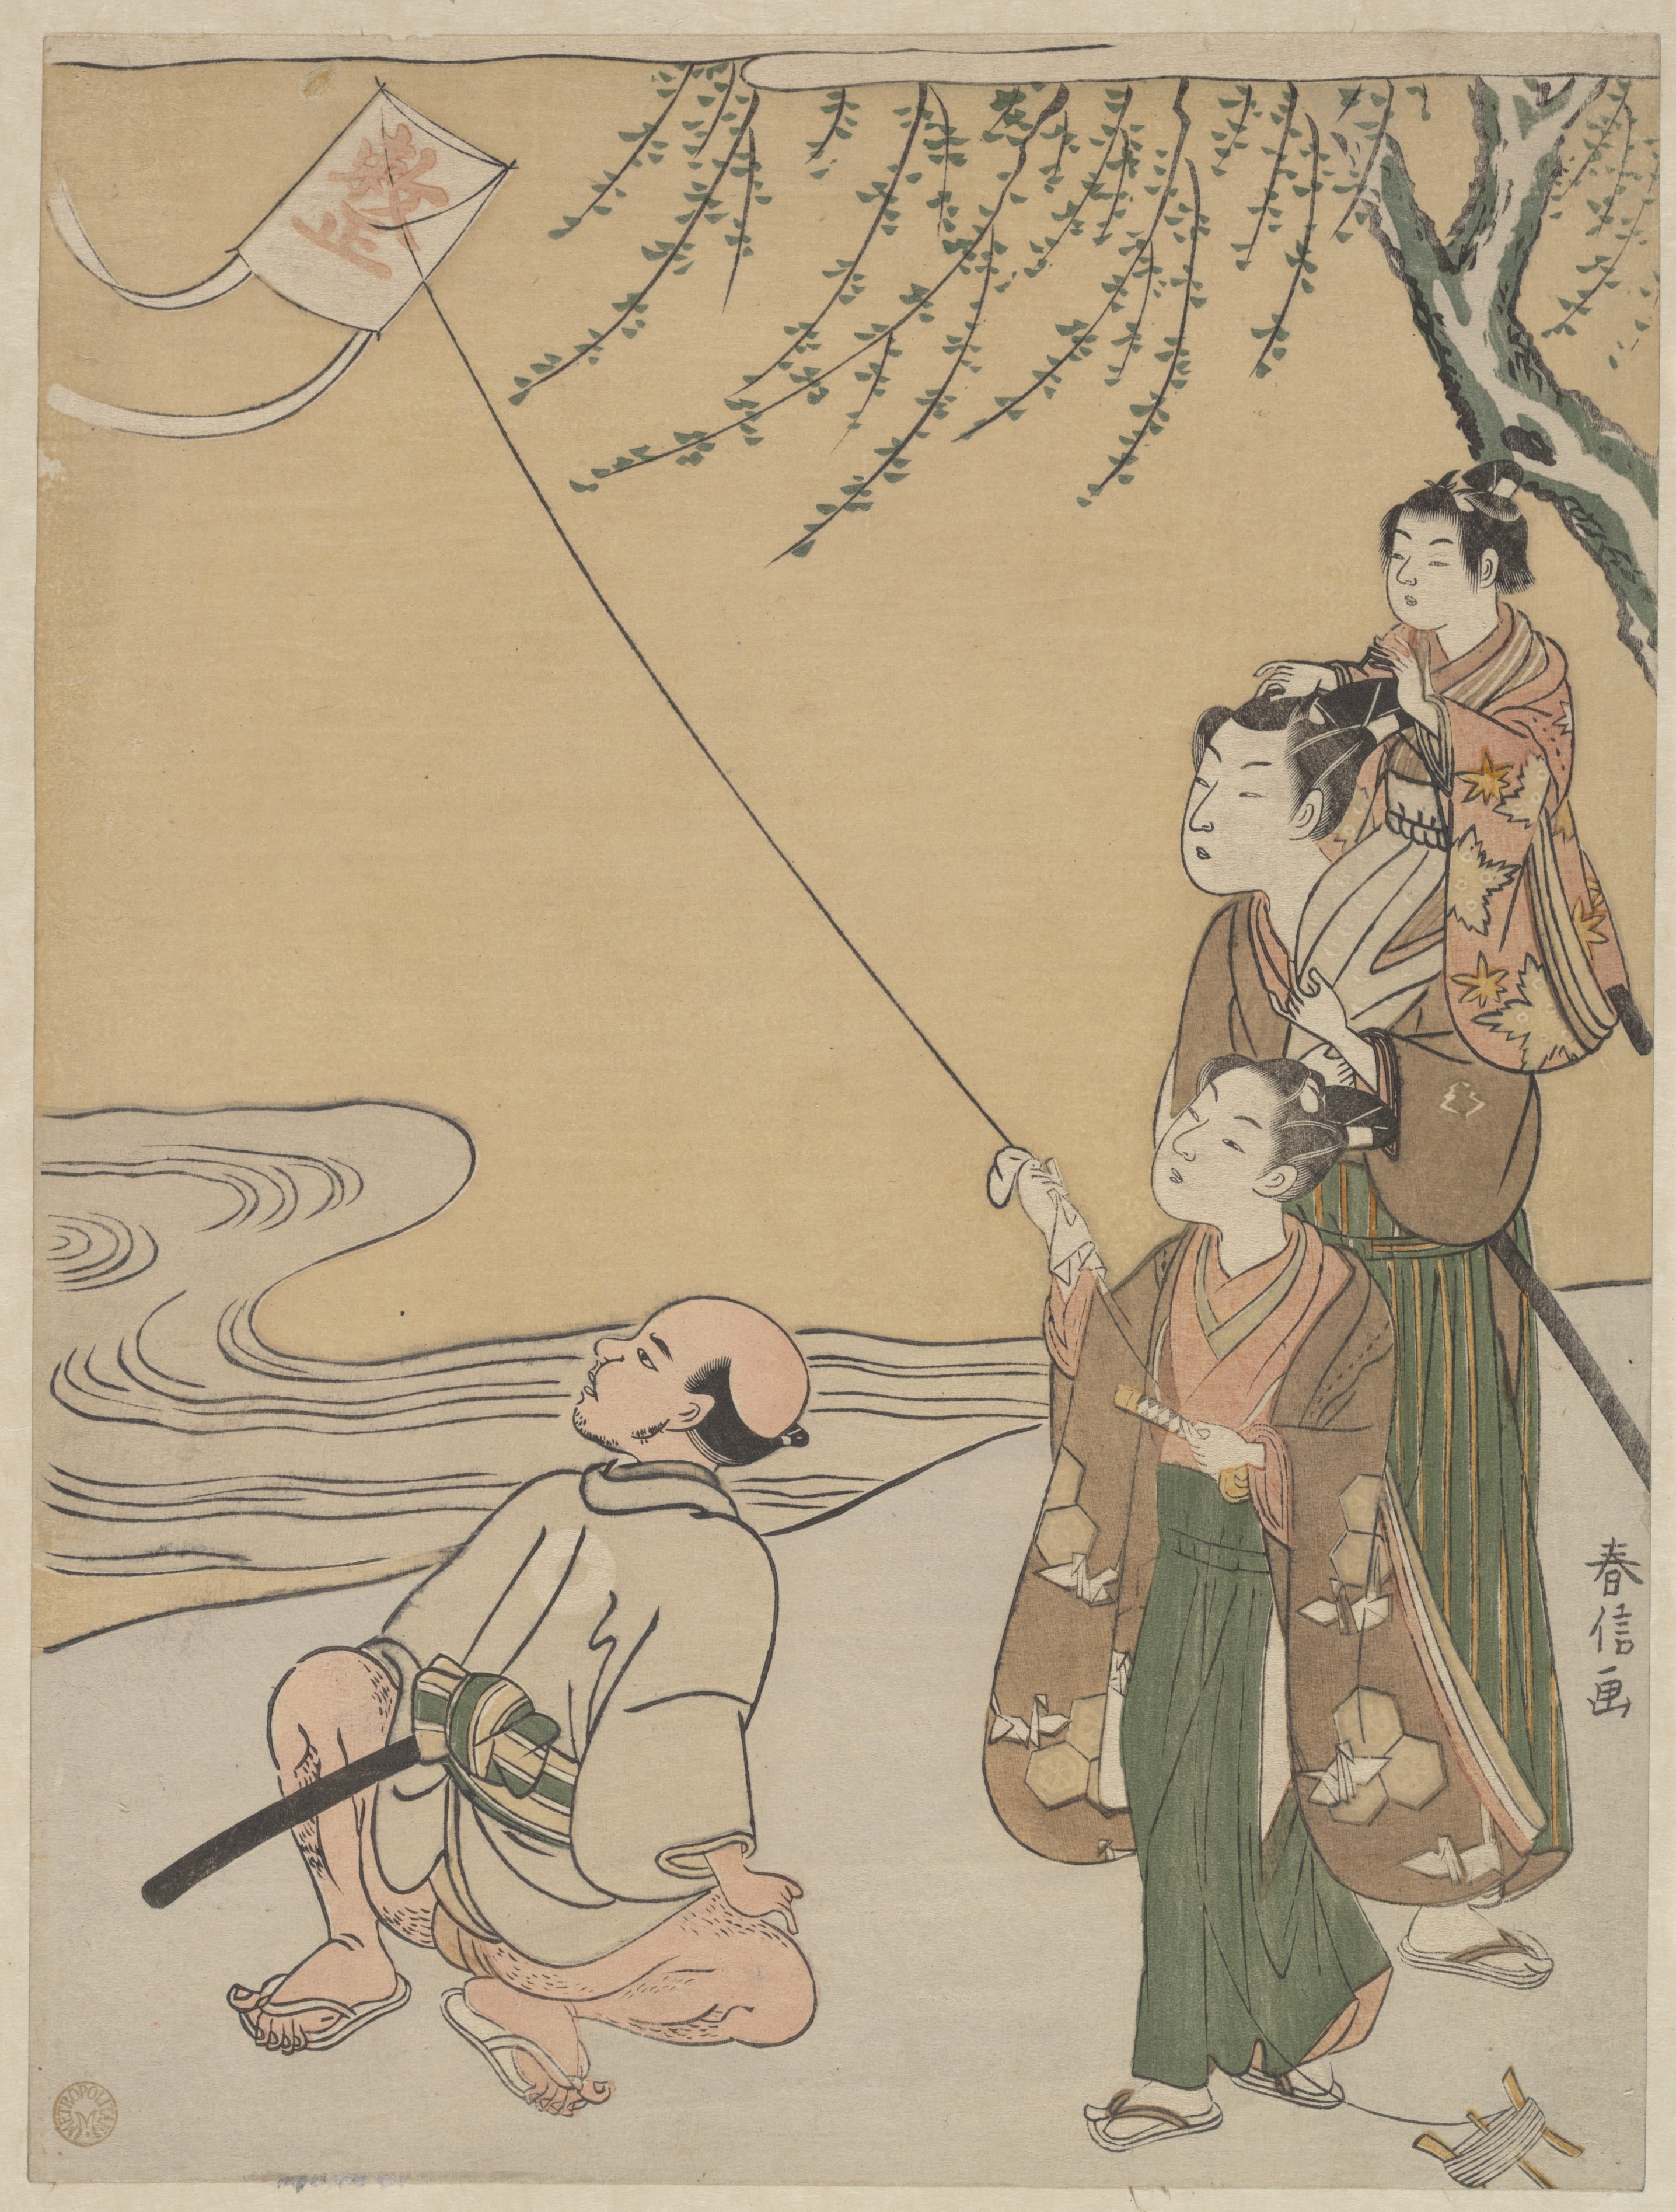 연날리기(Kite Flying) by Suzuki Harunobu - 1766 - 27.3 cm x 20.6 cm 